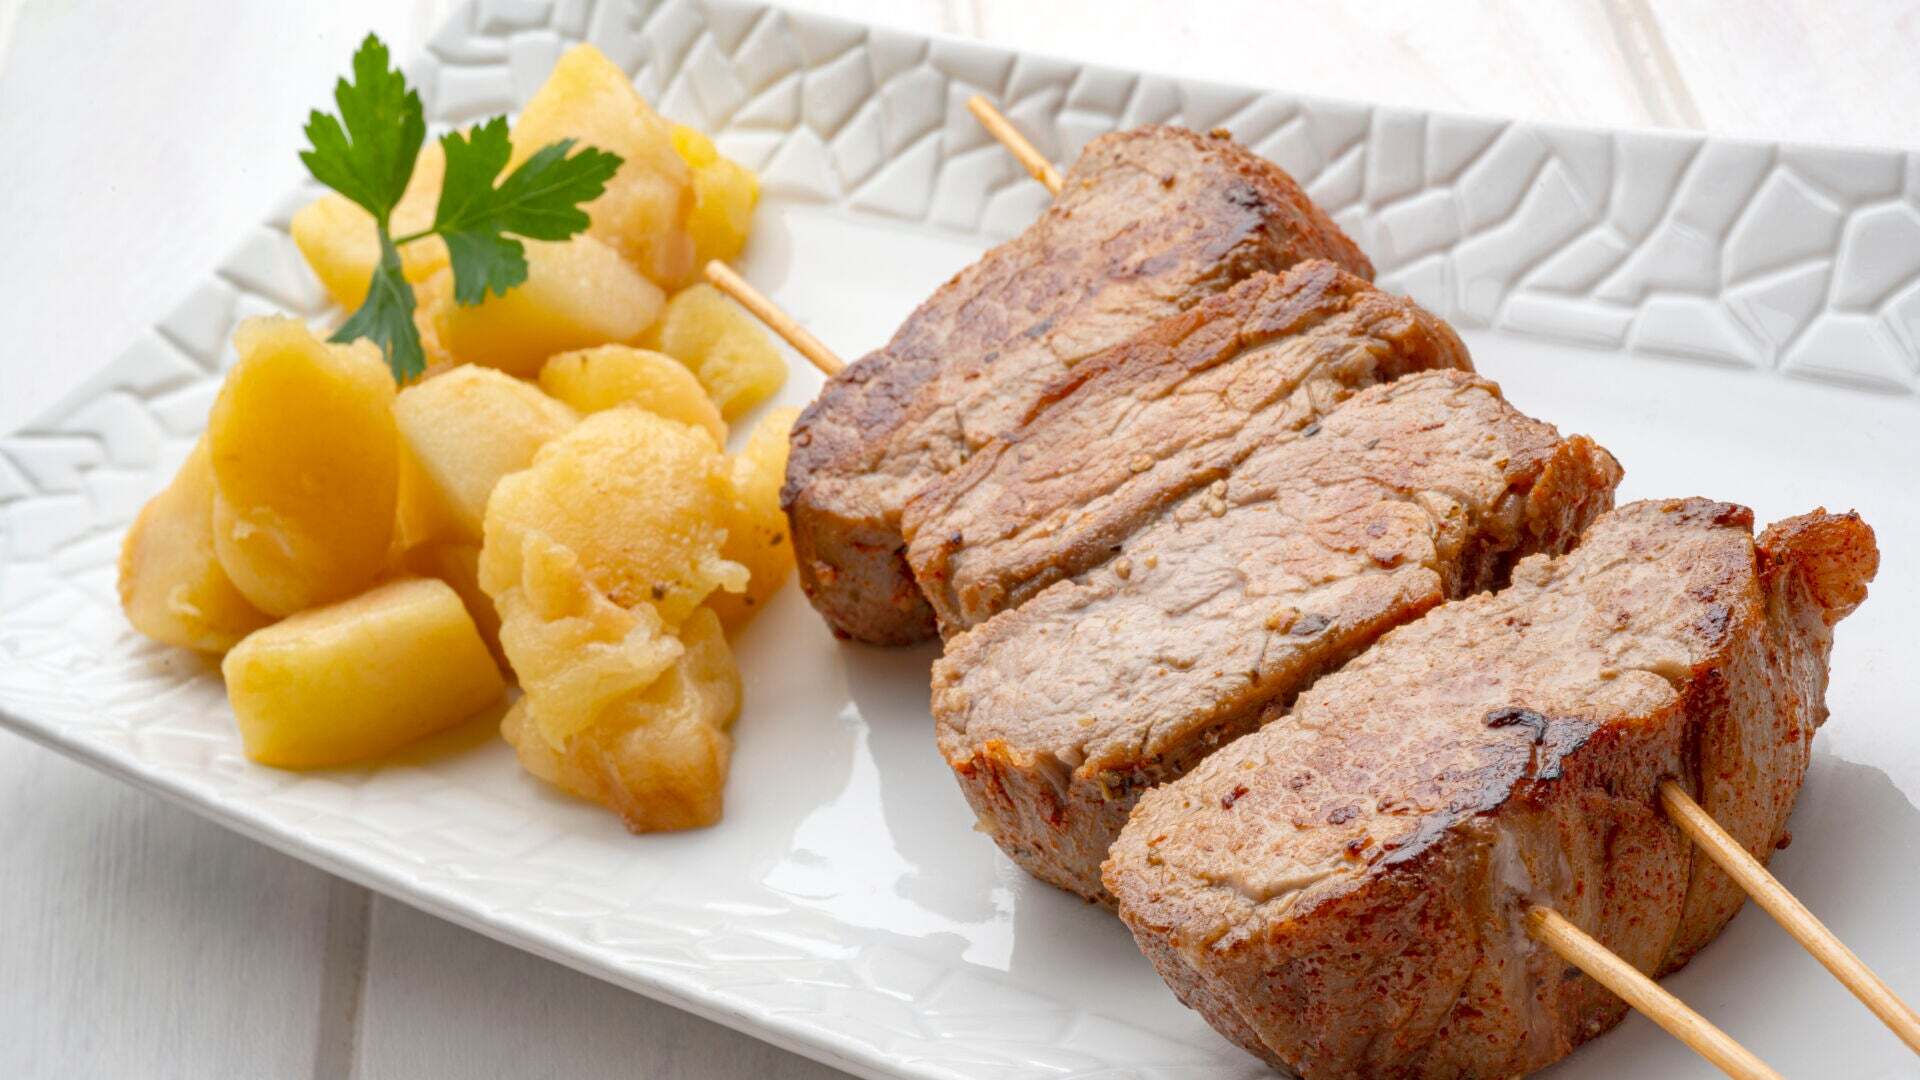 Temporada 1 Coliflor con panceta y salsa de queso y brocheta de solomillo de cerdo con manzana